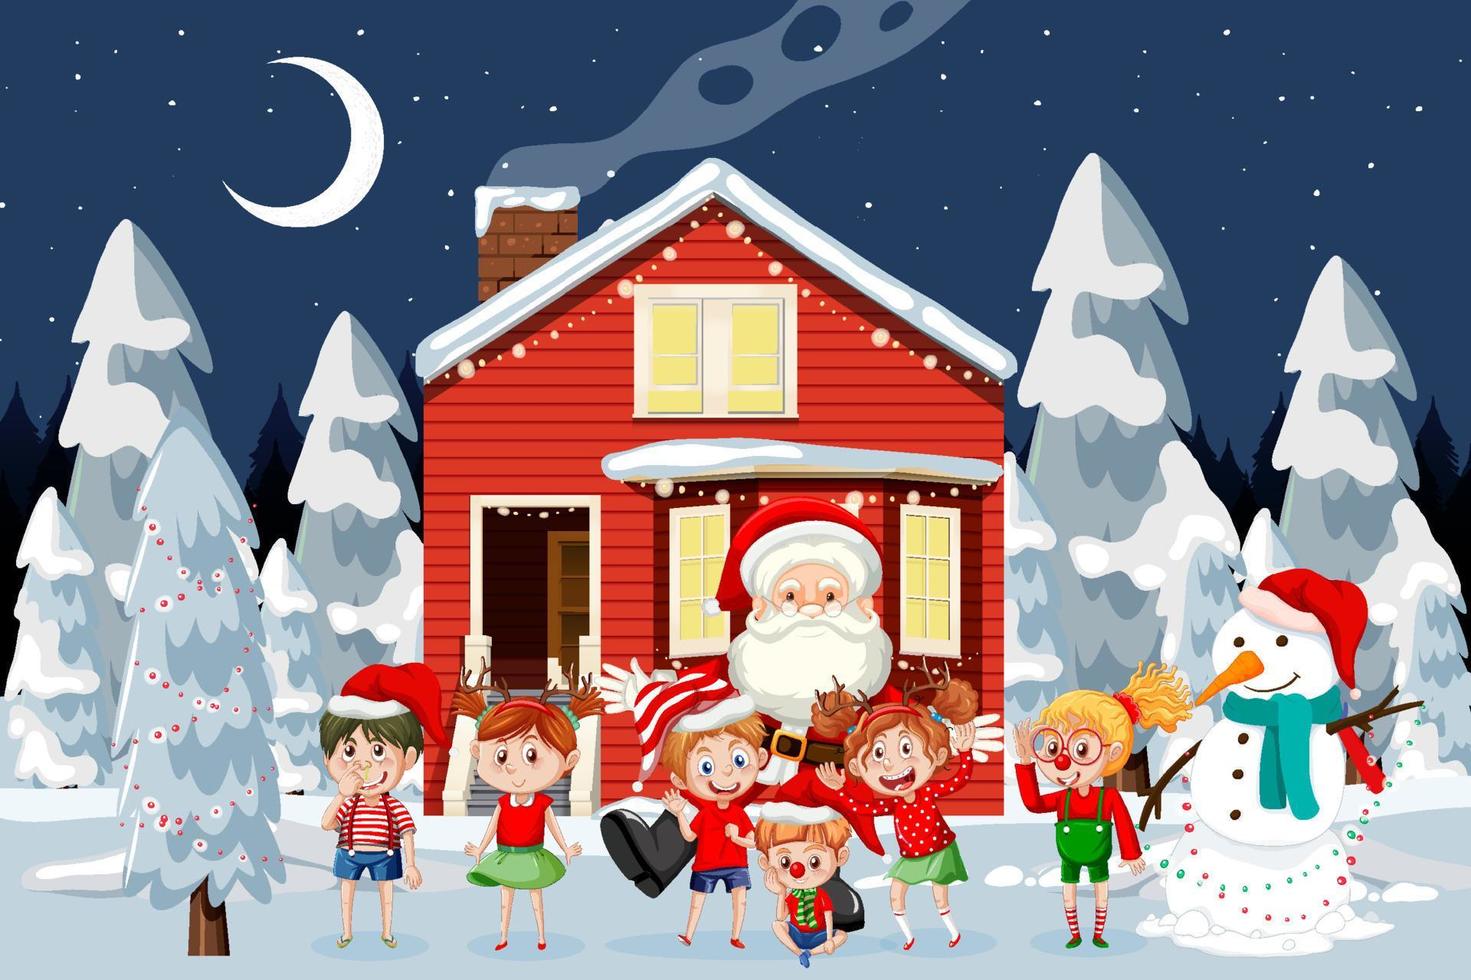 Christmas winter scene with happy children vector